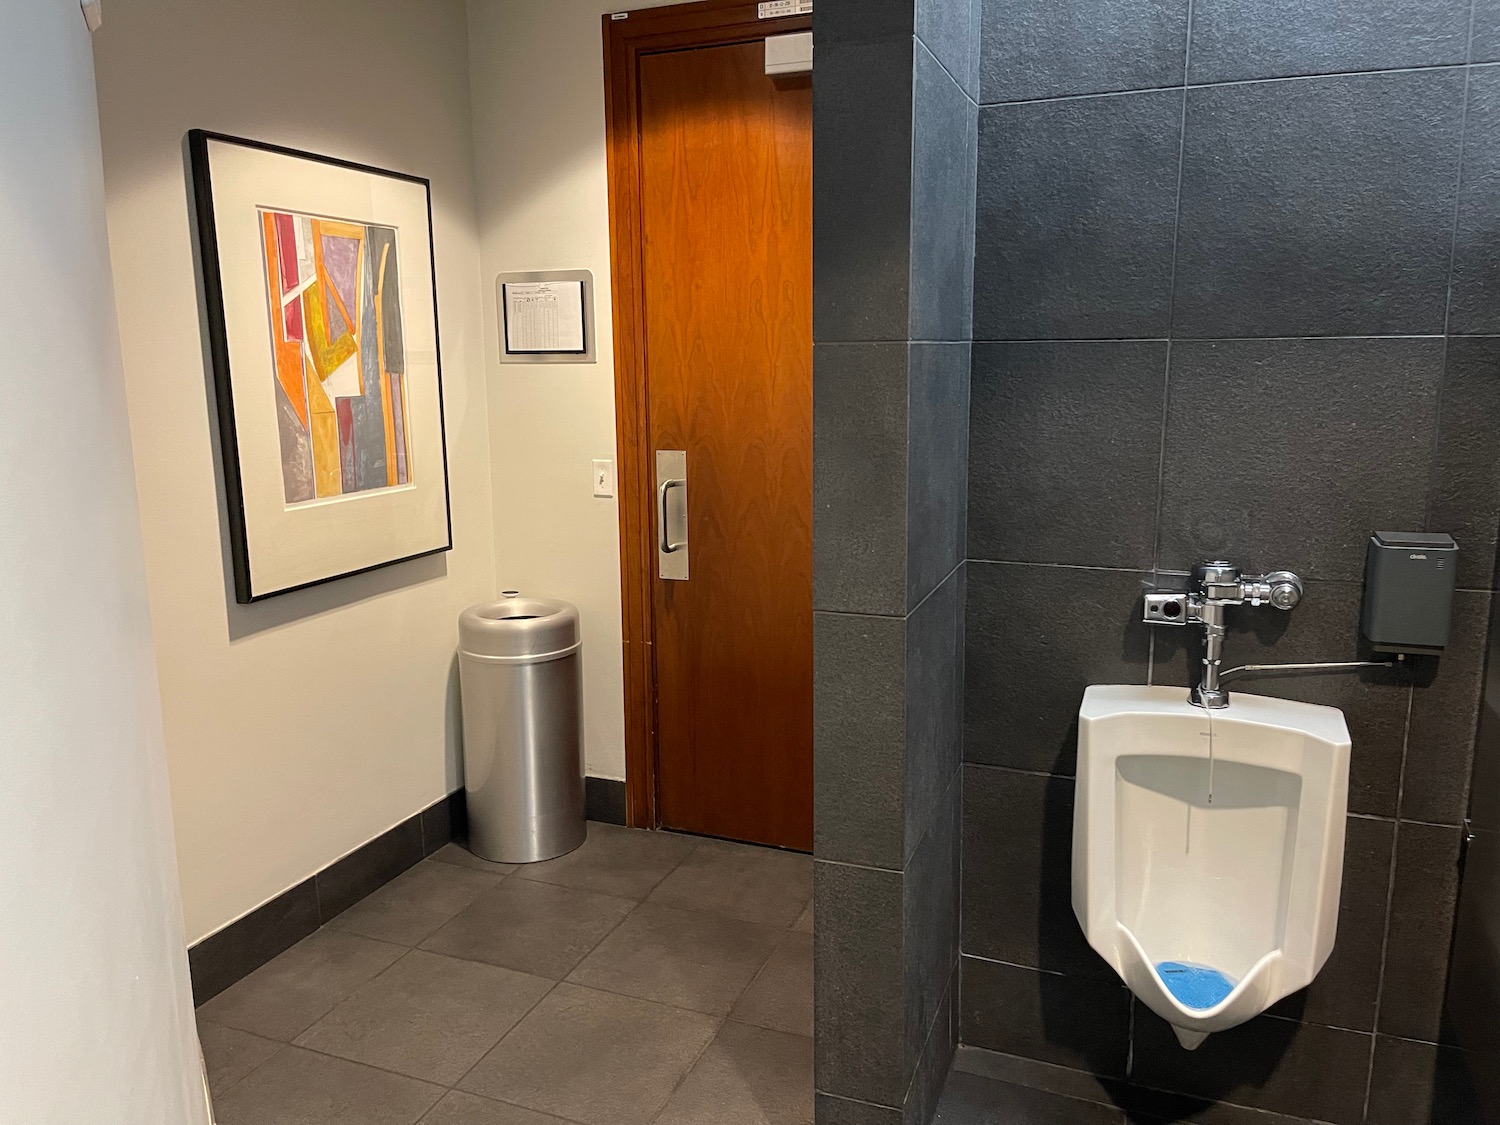 a urinal in a bathroom